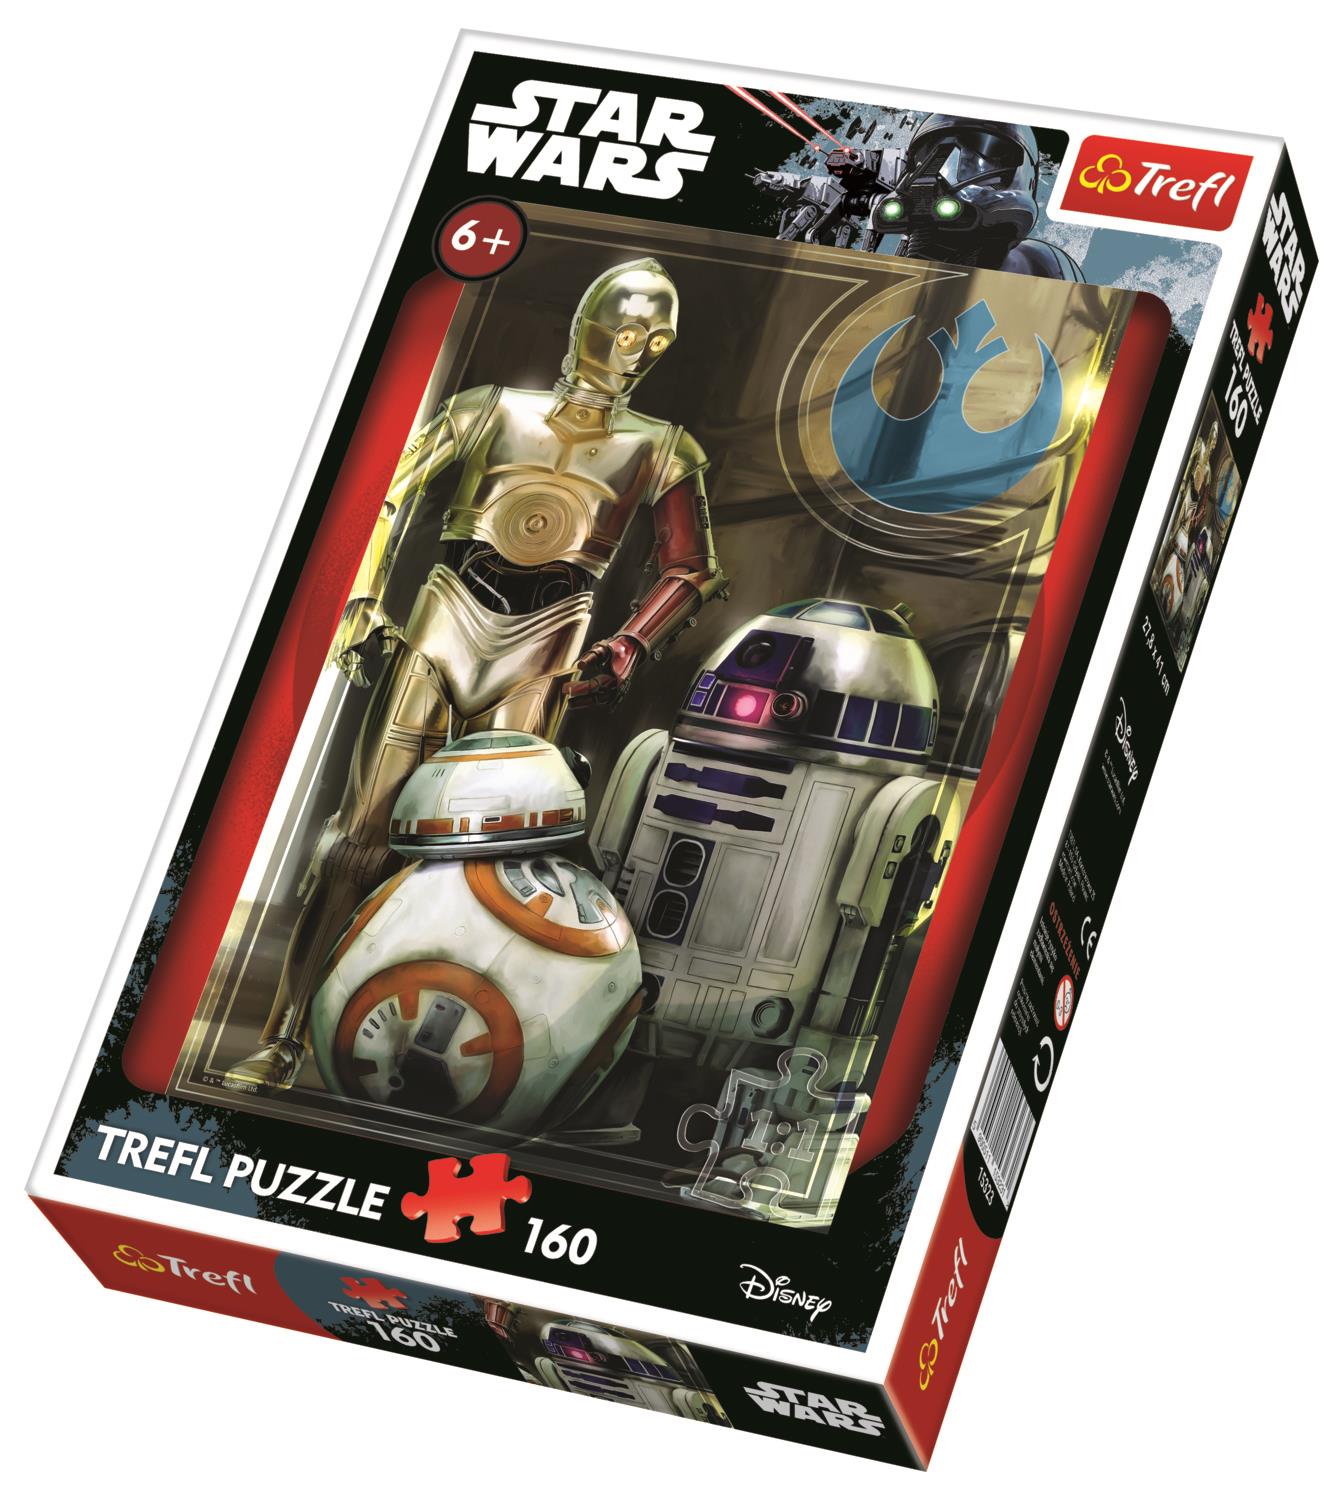 Trefl Çocuk Puzzle 15323 Star Wars Episode VII: Force Awakens, Droids, Disney 160 Parça Puzzle